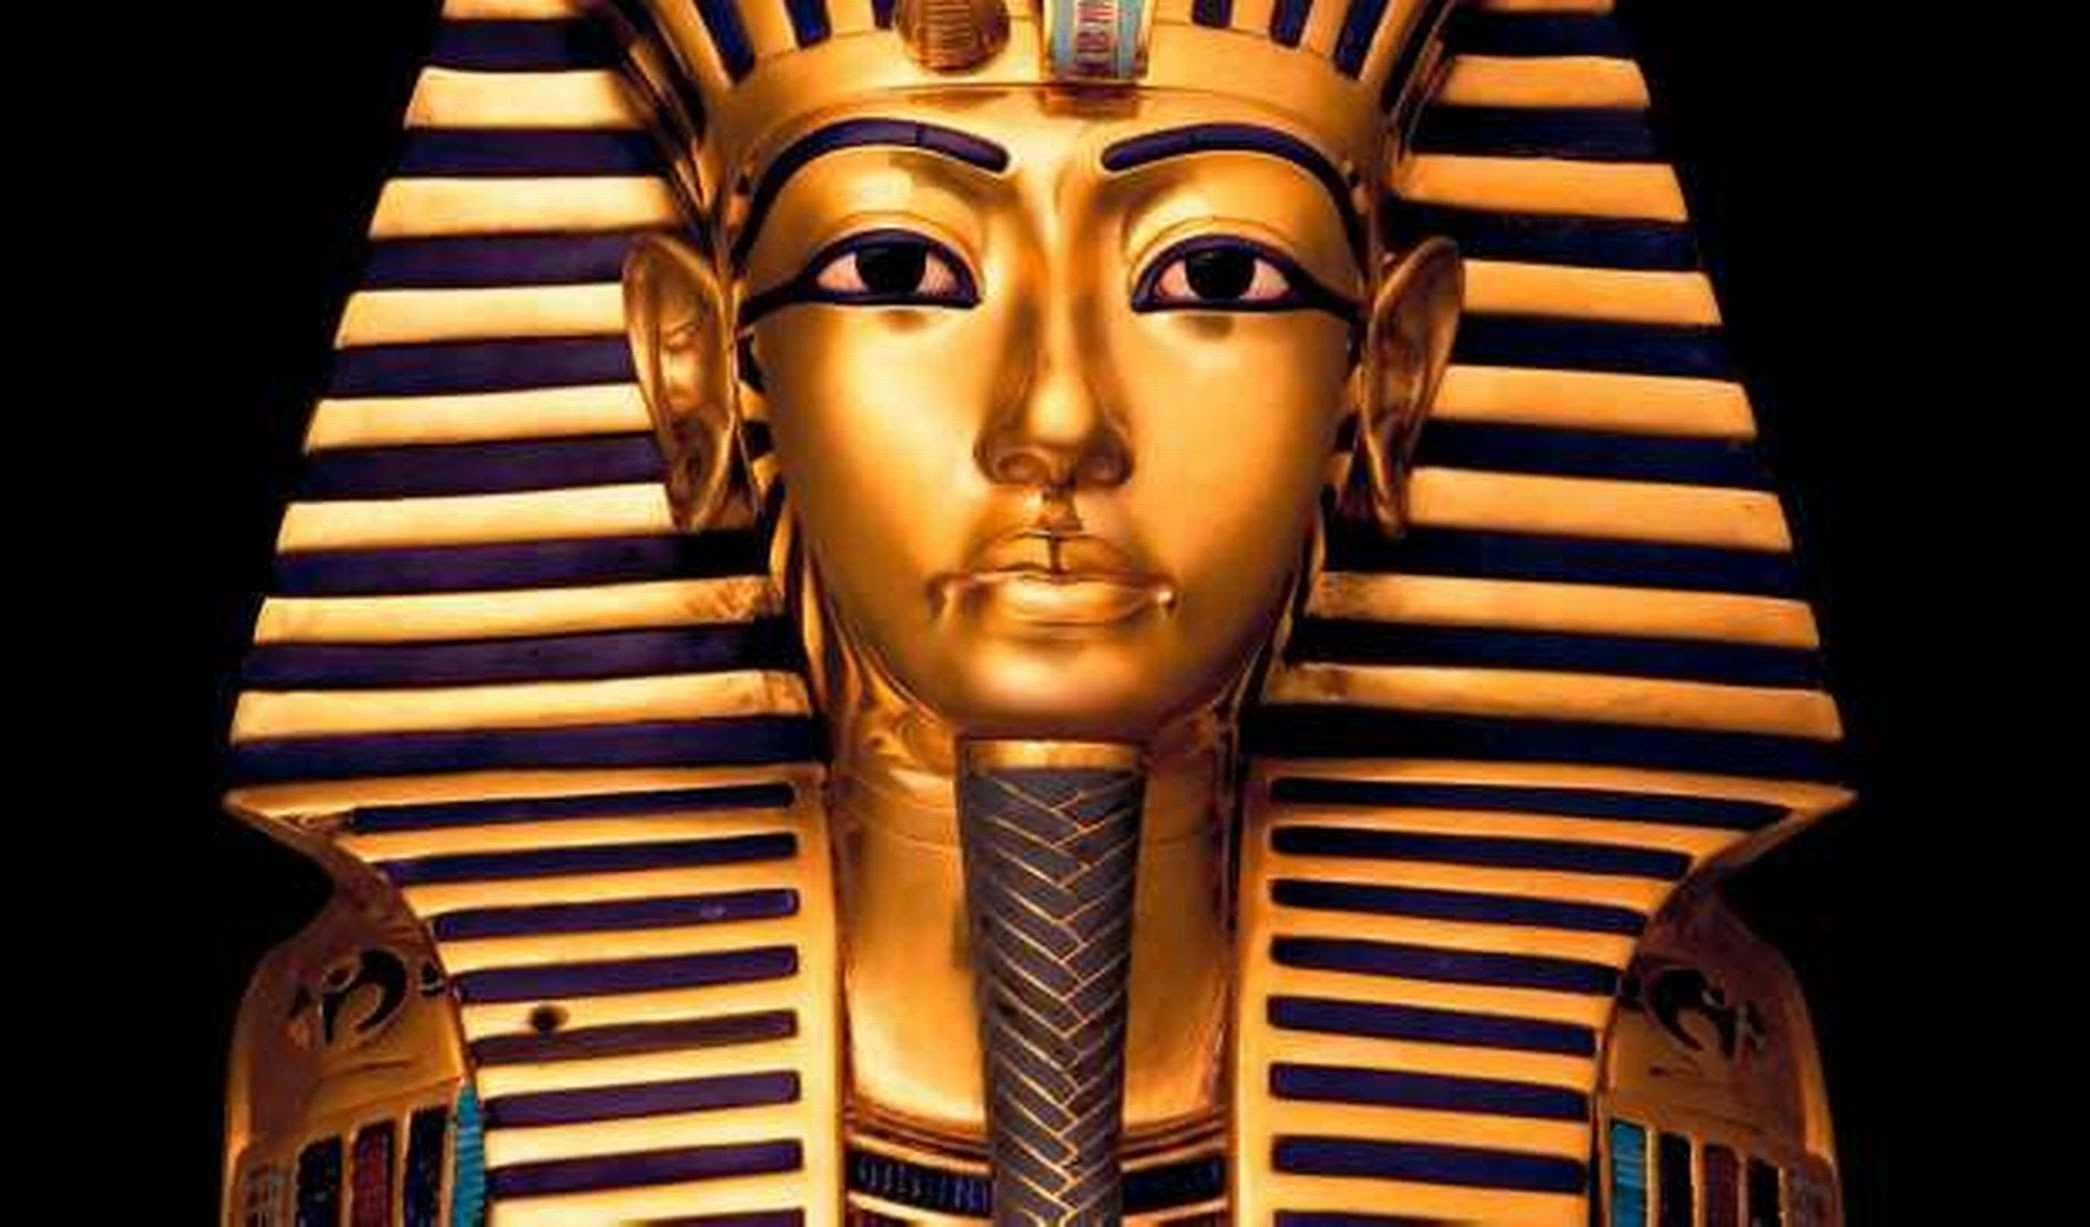 Santuário no Egito apresenta evidências de rituais desconhecidos - Planeta